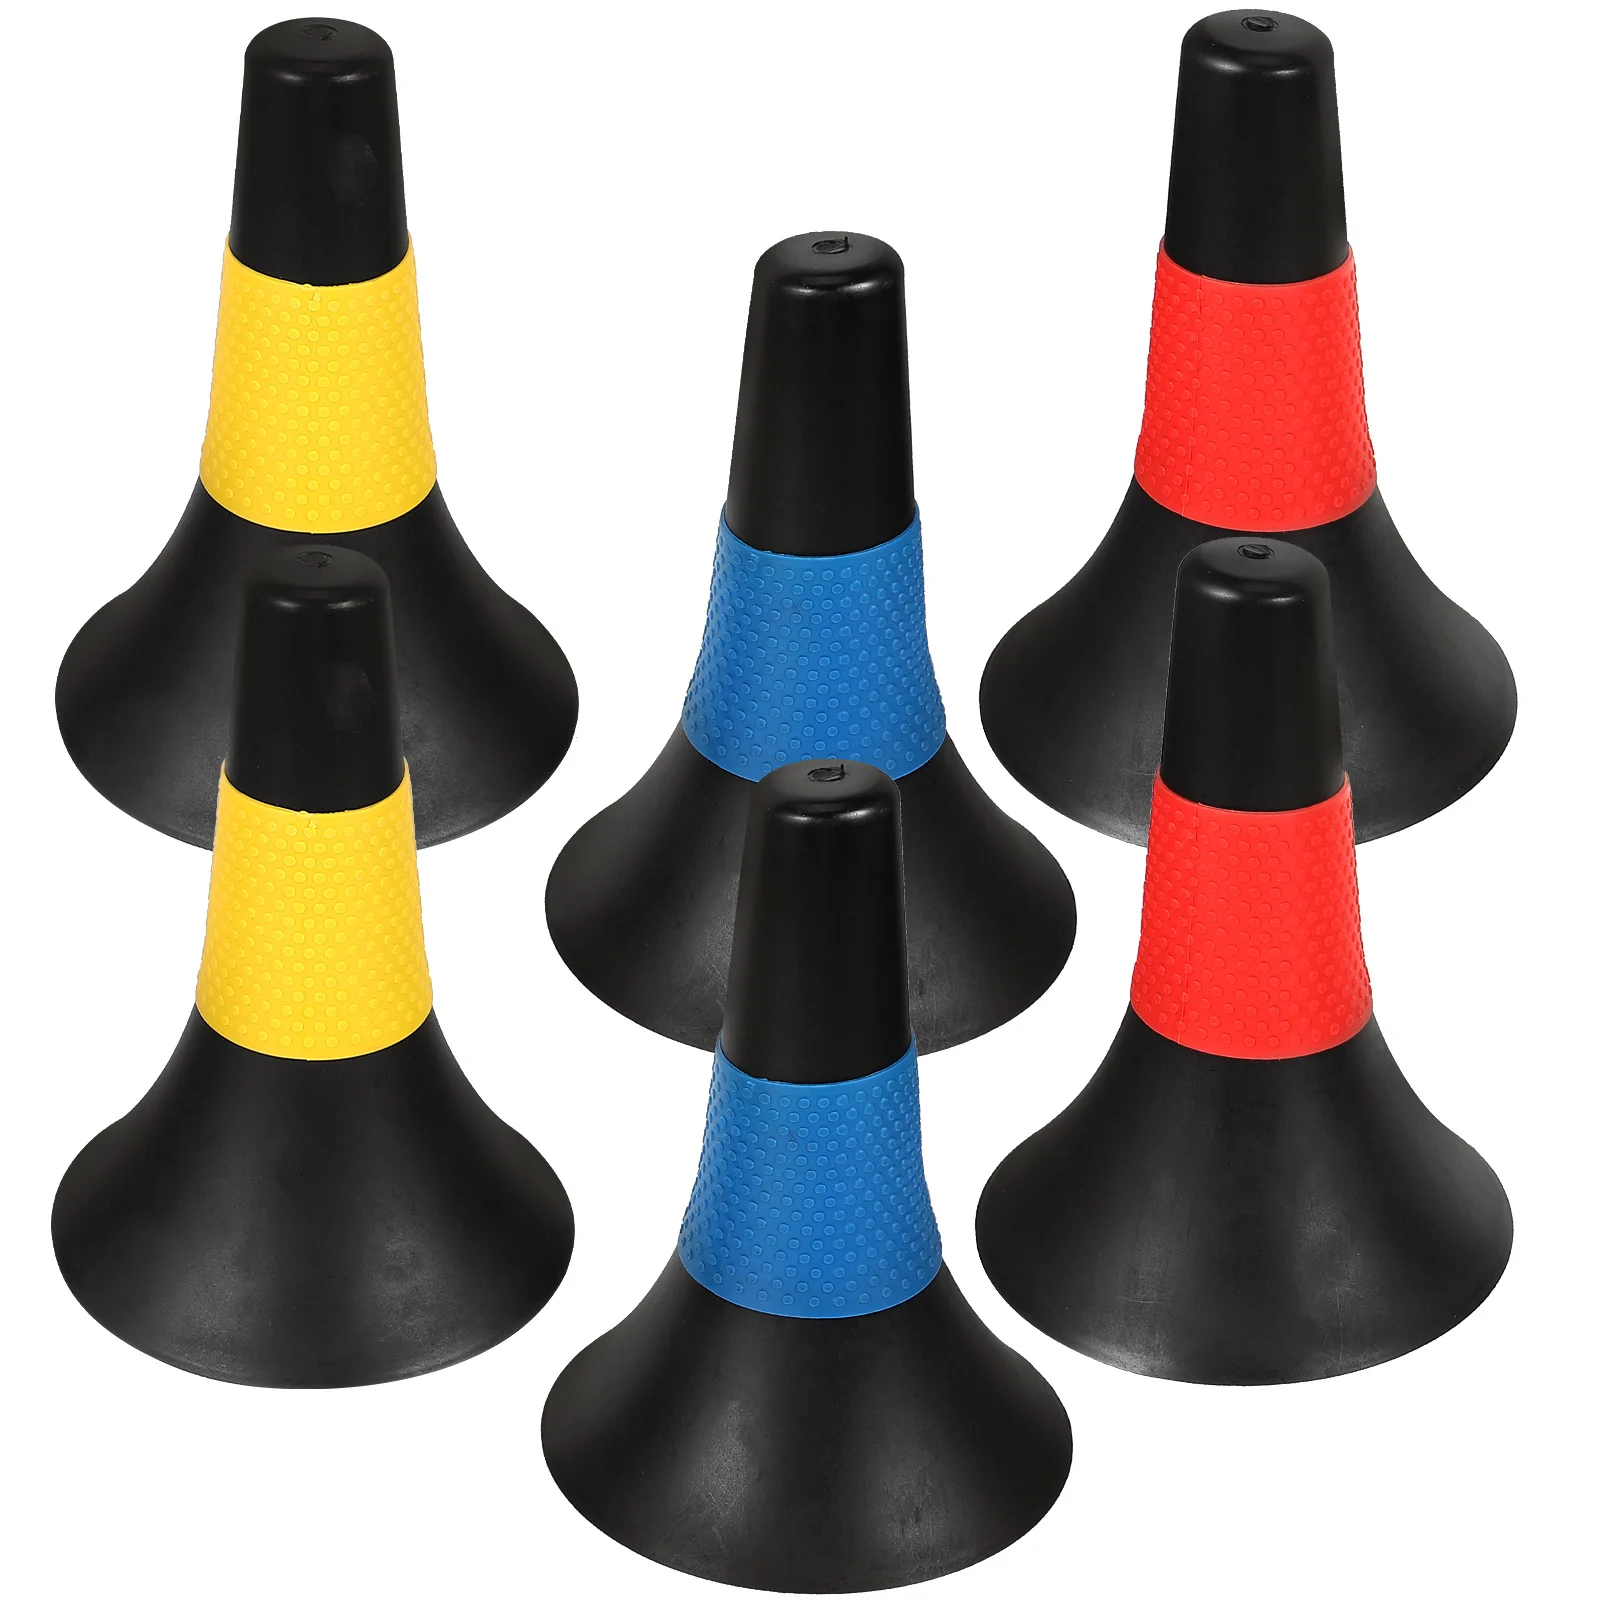 

6 шт. пластиковые спортивные конусные дорожные футбольные мячи принадлежности для тренировок по футболу конусы для препятствий для вождения